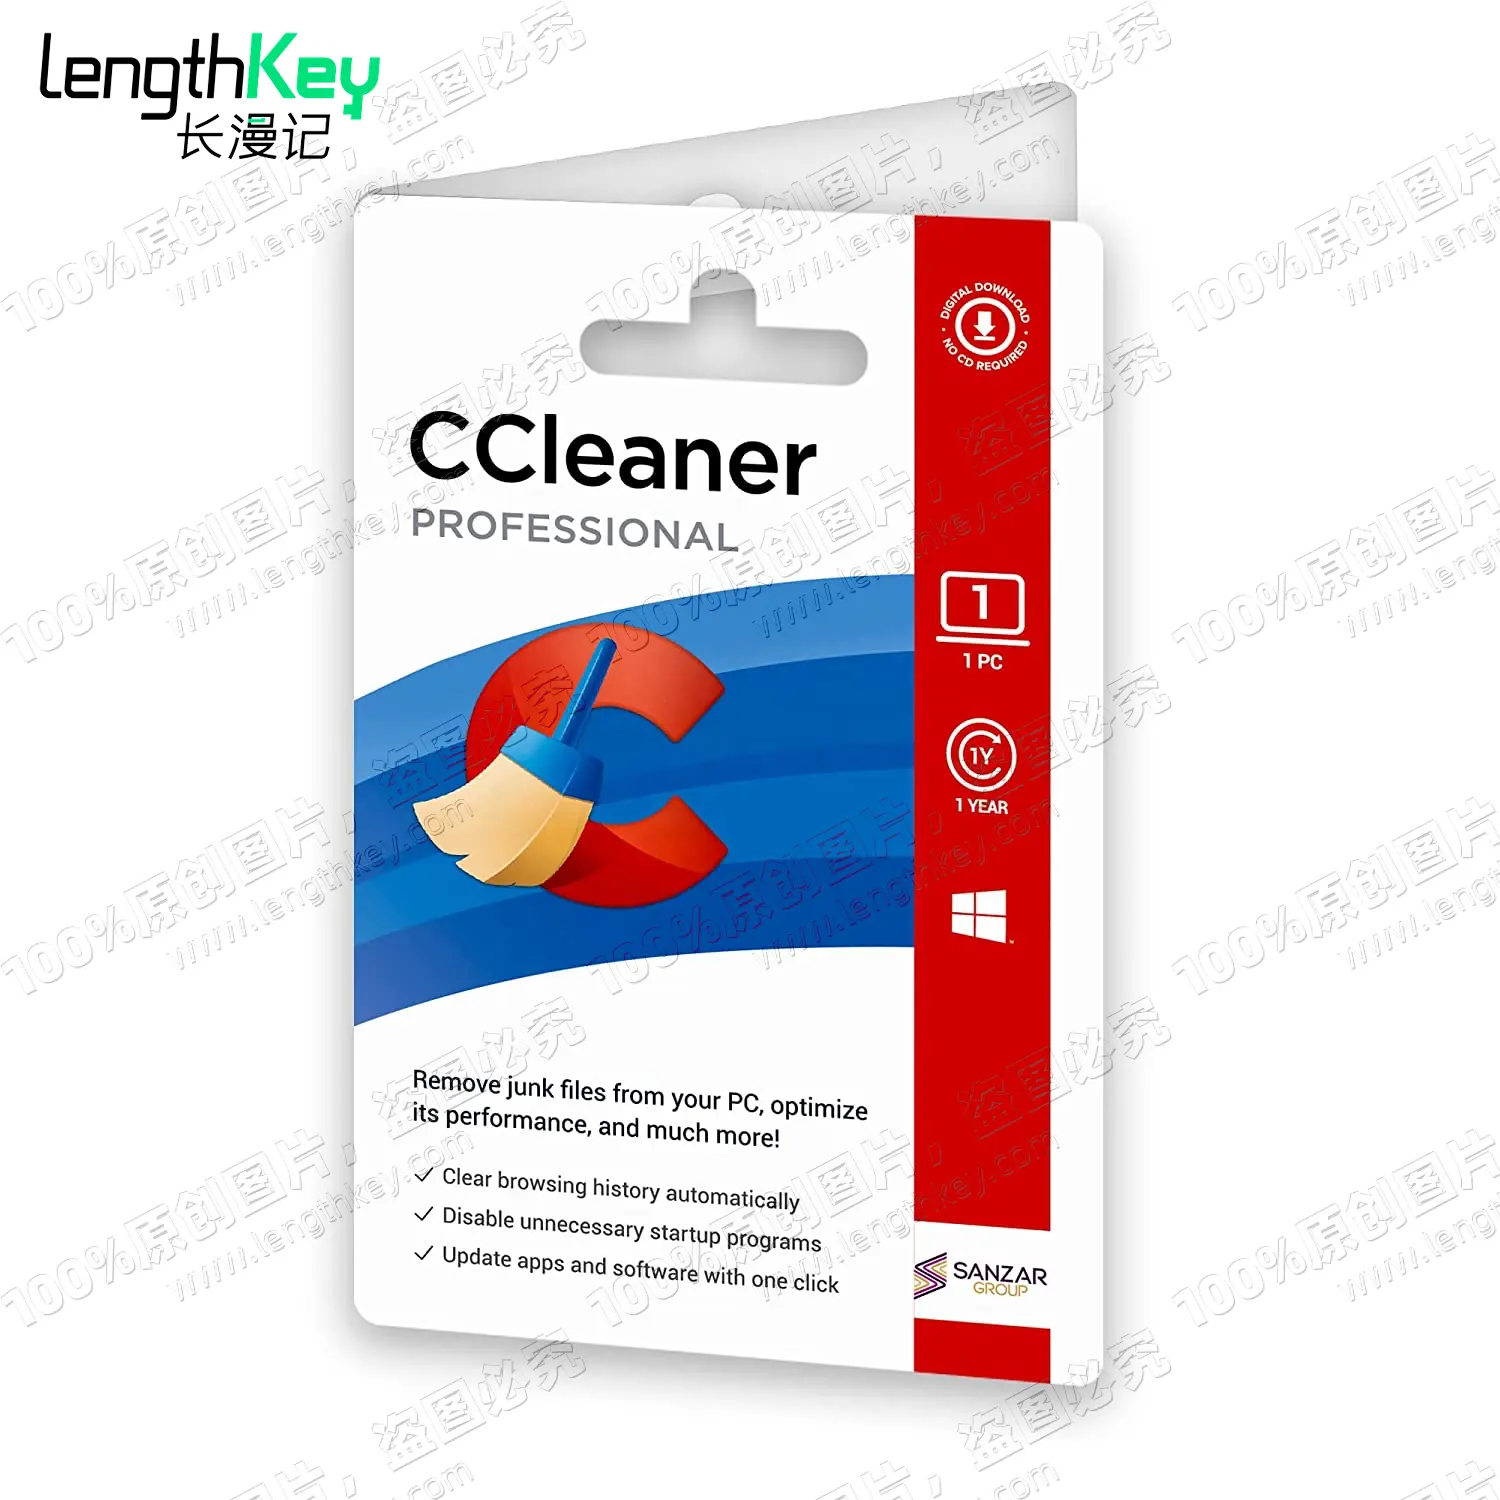 Онлайн CCleaner 24/7, профессиональный ключ, 1 шт., 1 год, официальный оригинальный лицензионный ключ, оптимизация программного обеспечения для очистки компьютера